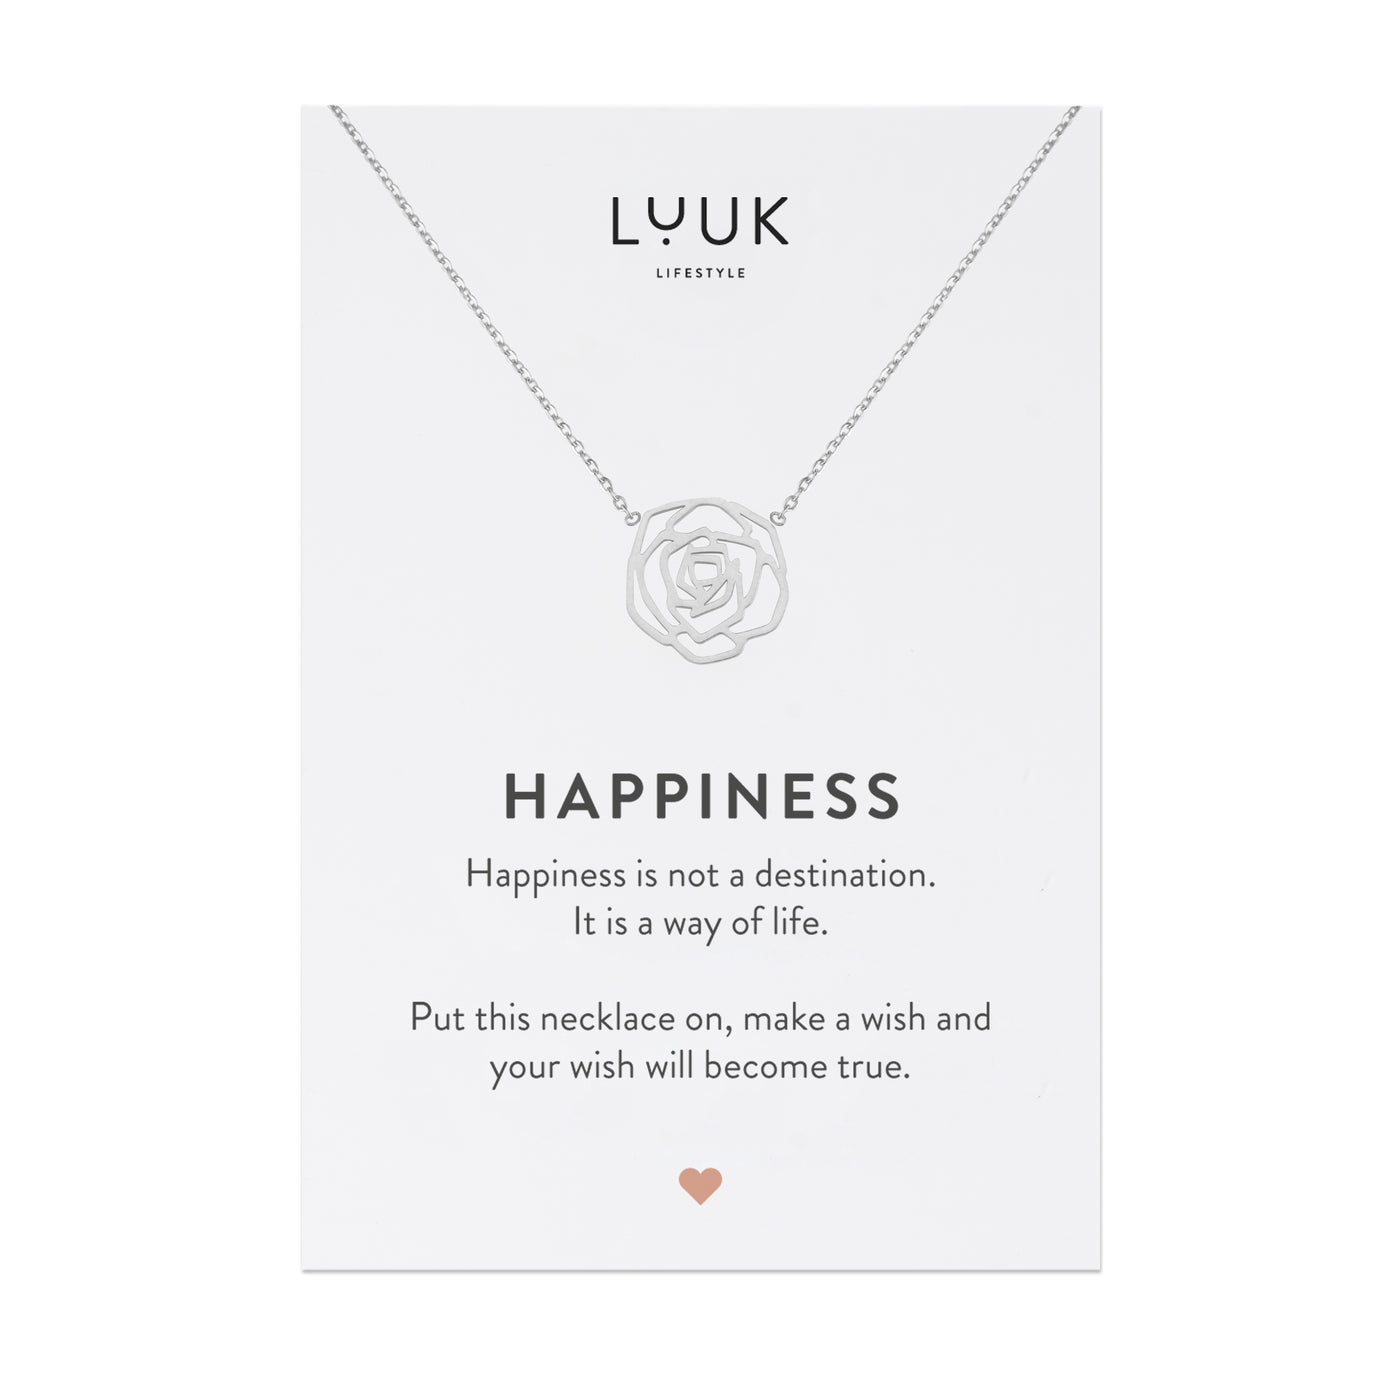 Halskette mit Rosenblüten Anhänger aus Edelstahl auf Happiness Spruchkarte von der Marke Luuk Lifestyle 